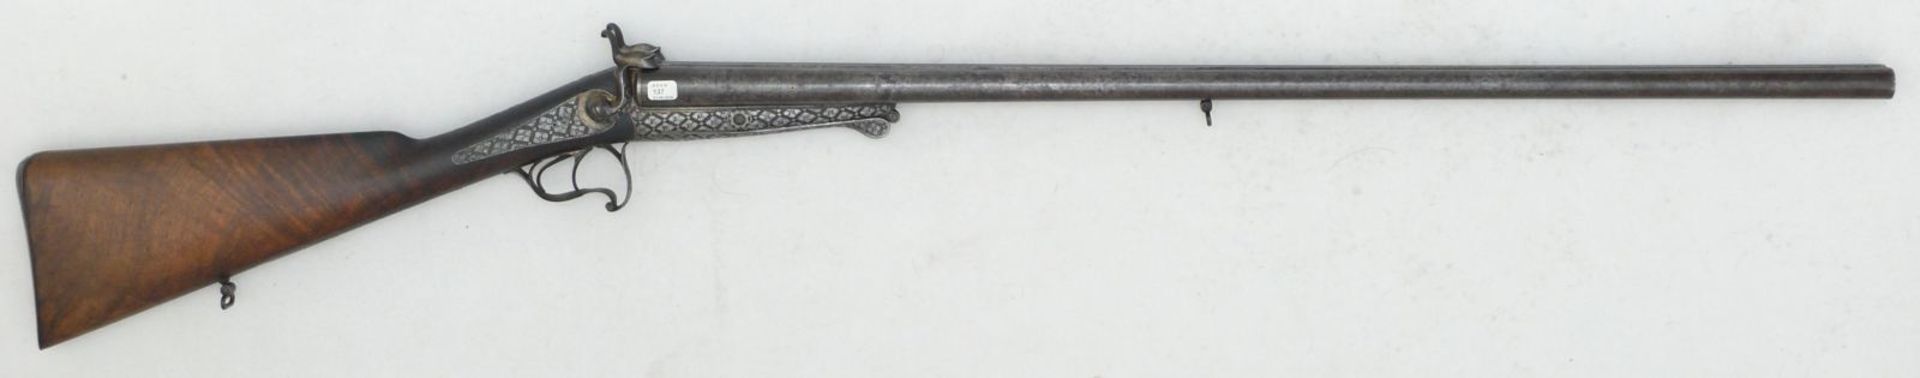 Hahndoppelflinte Lefaucheux, Kal. 16Stiftfeuer. LL=78cm, T-Verschluss mit langem Schlüssel,